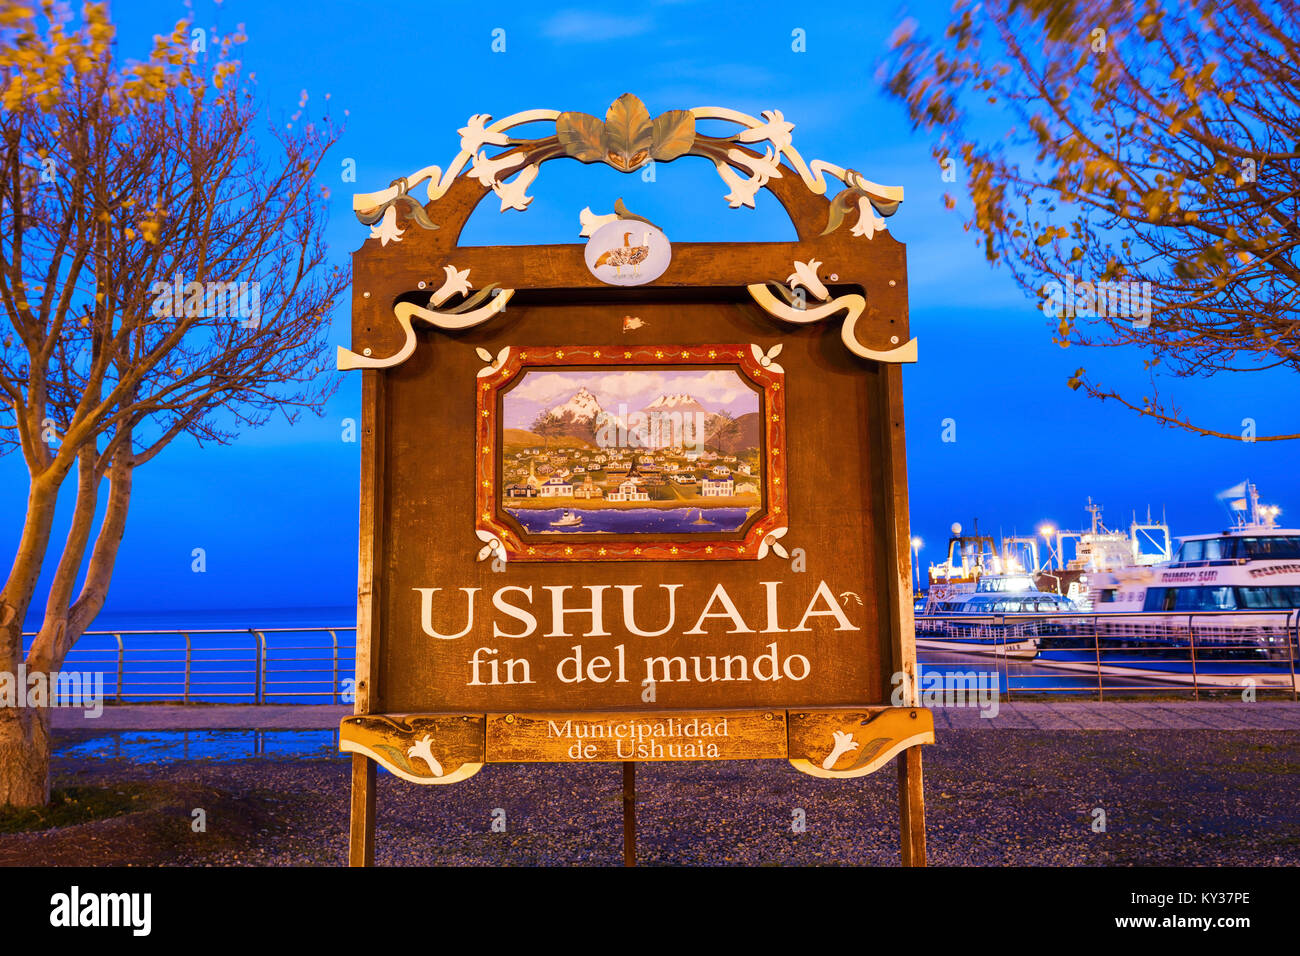 USHUAIA, Argentina - 15 Aprile 2016: Ushuaia fin del mundo (fine del mondo) segno. Ushuaia è la capitale di Tierra del Fuego provincia in Argentina. Foto Stock